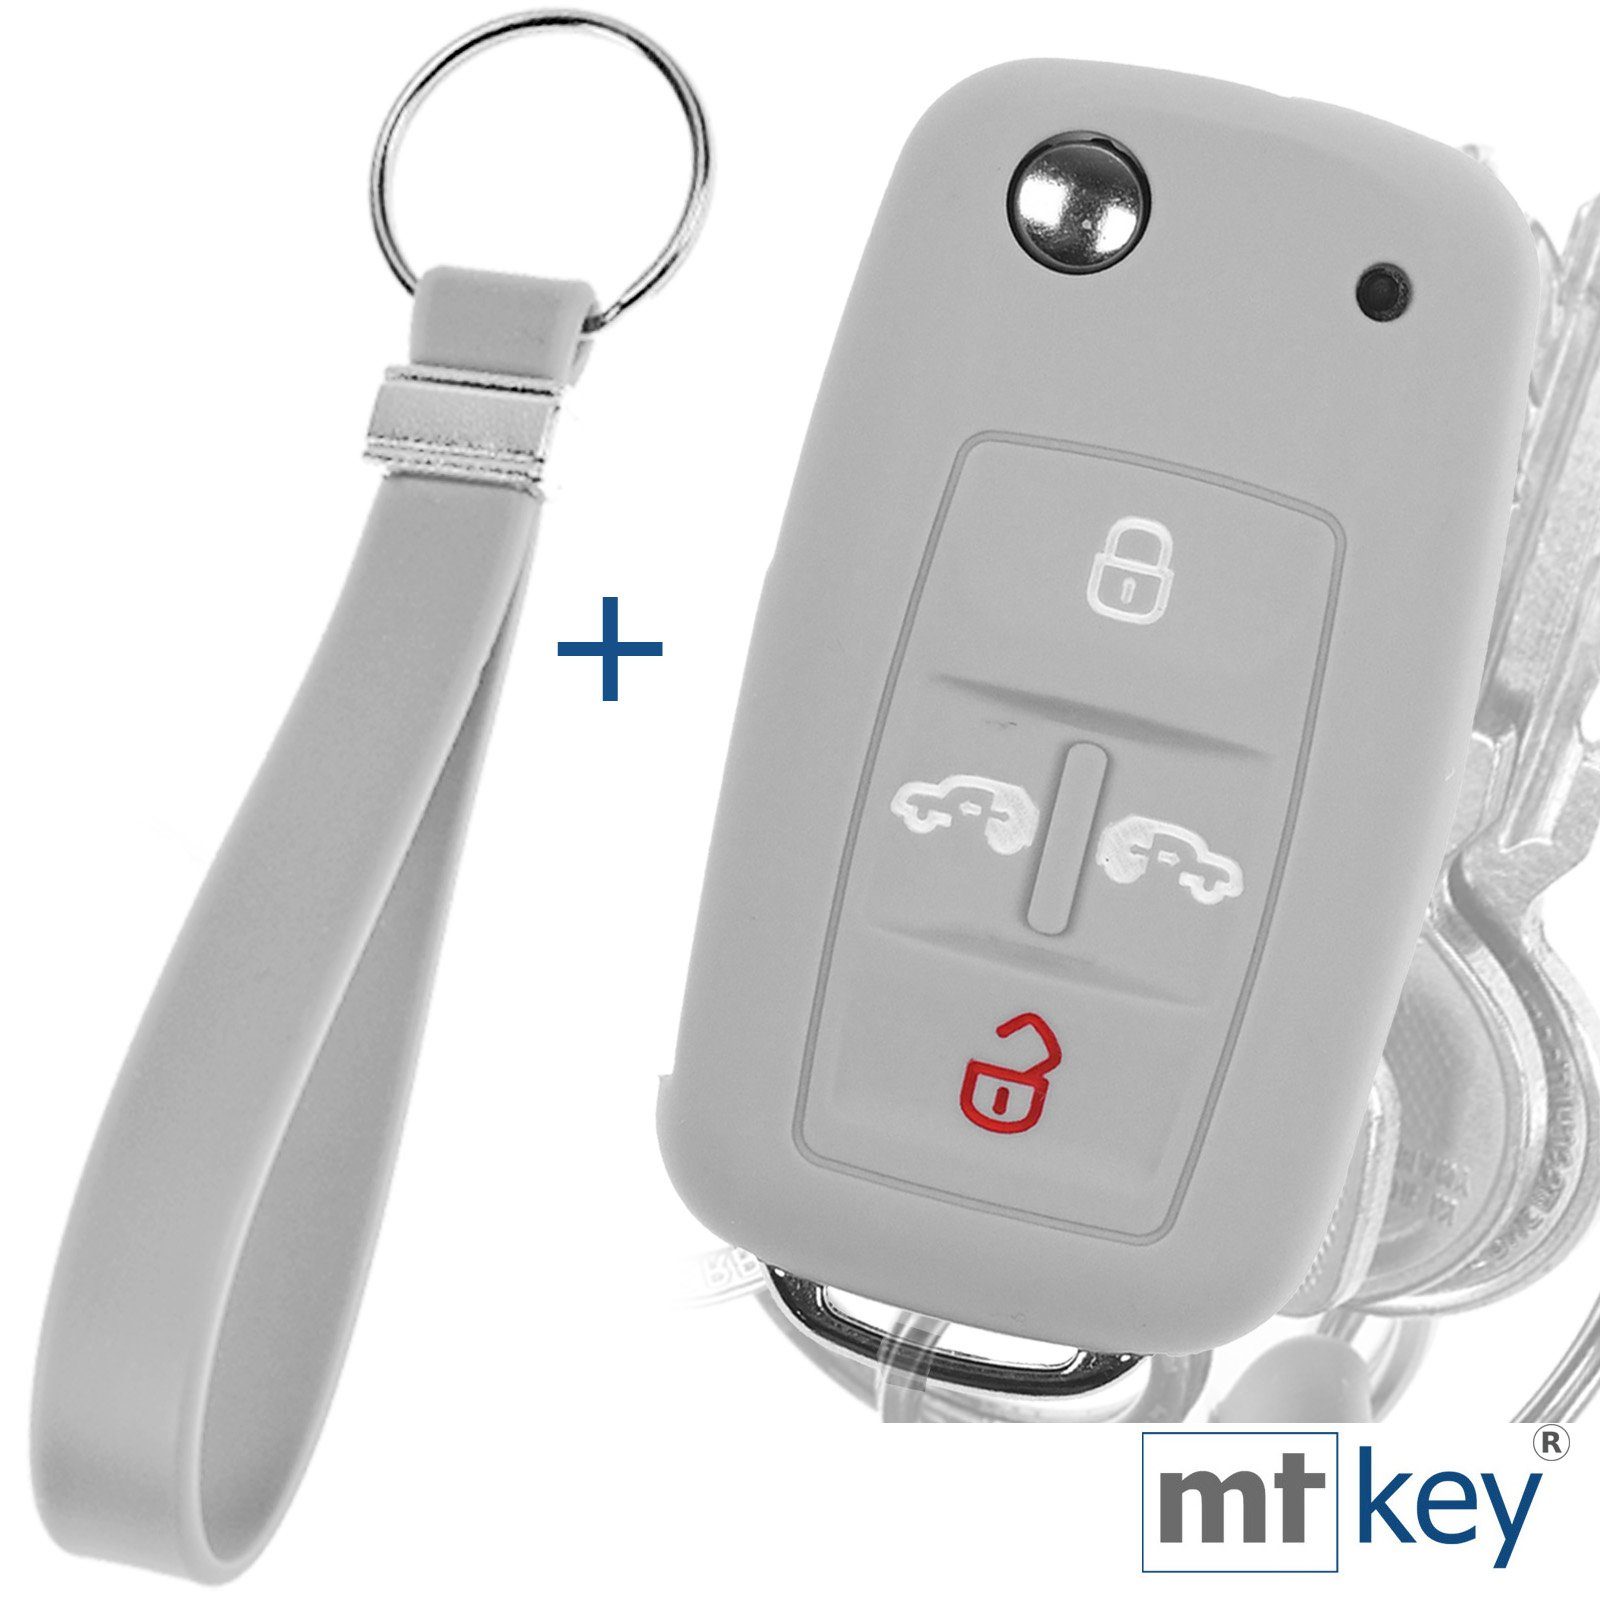 mt-key Schlüsseltasche Autoschlüssel Silikon Schutzhülle im Wabe Design Grau + Schlüsselband, für VW Multivan Sharan T5 T6 Caddy Seat Alhambra 4 Tasten Schlüssel